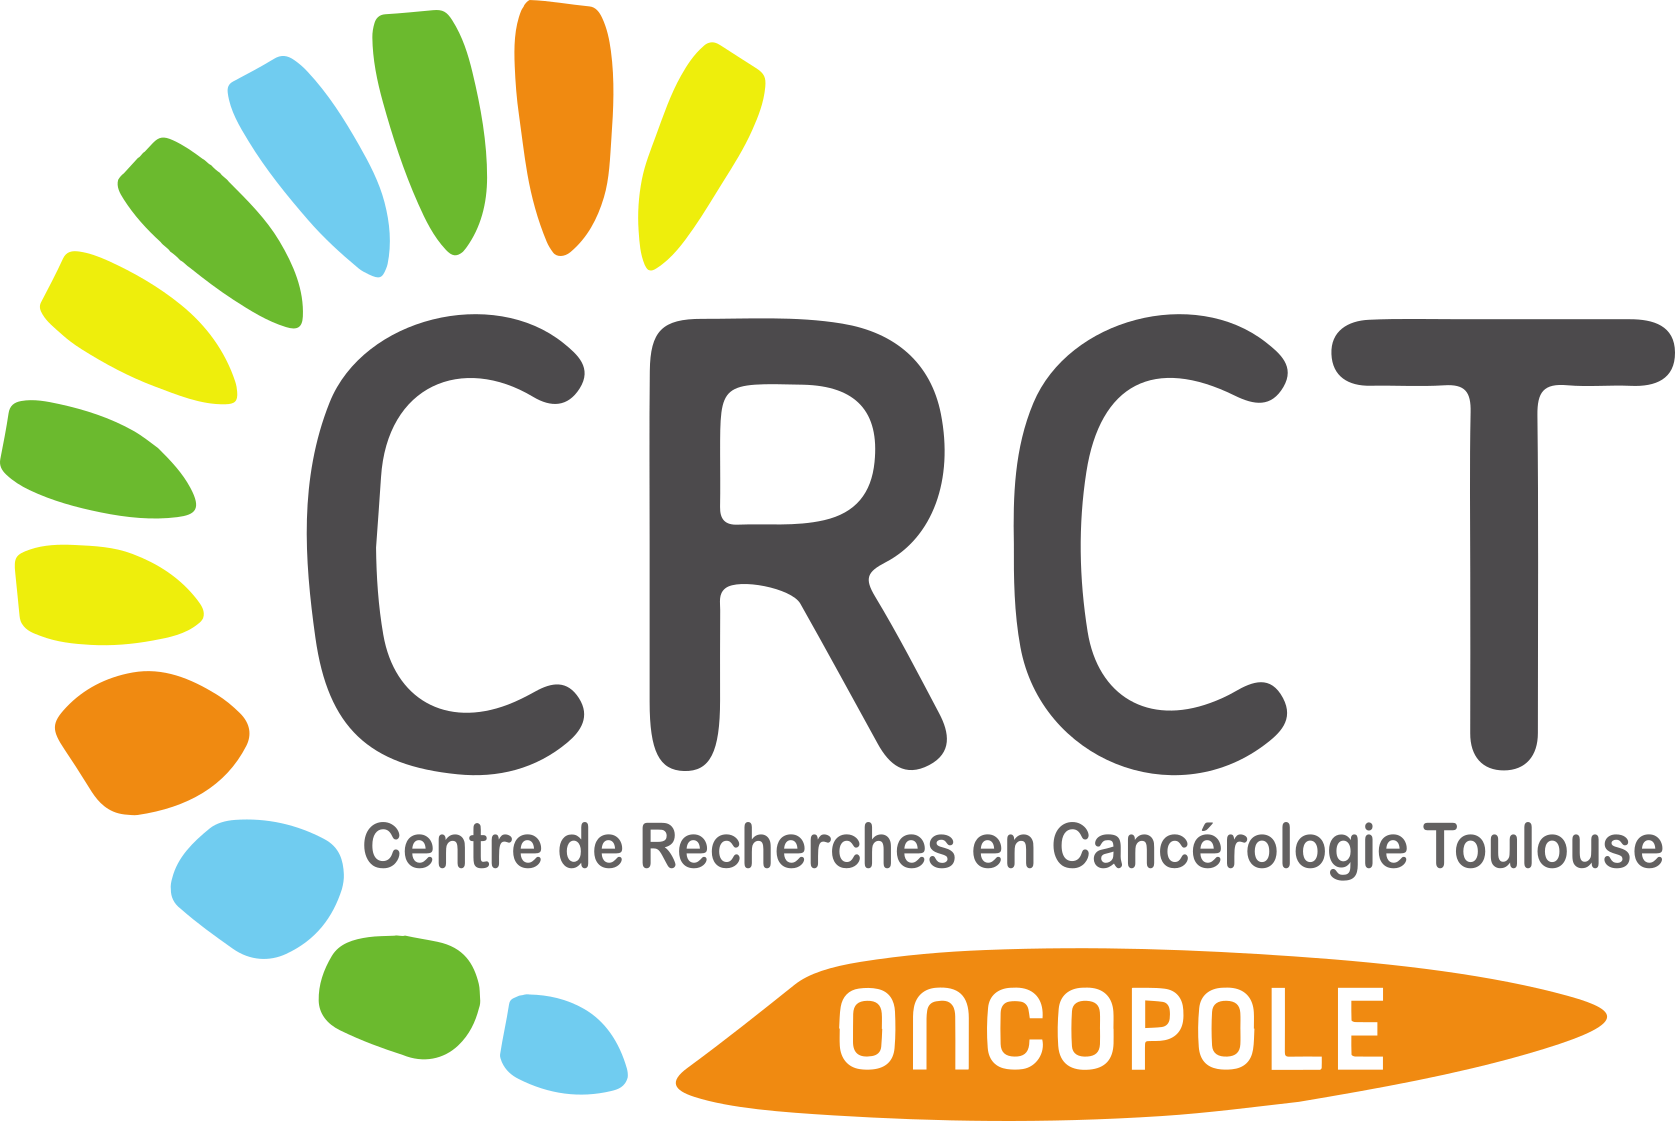 CRCT Centre De Recherche en Cancérologie de Toulouse